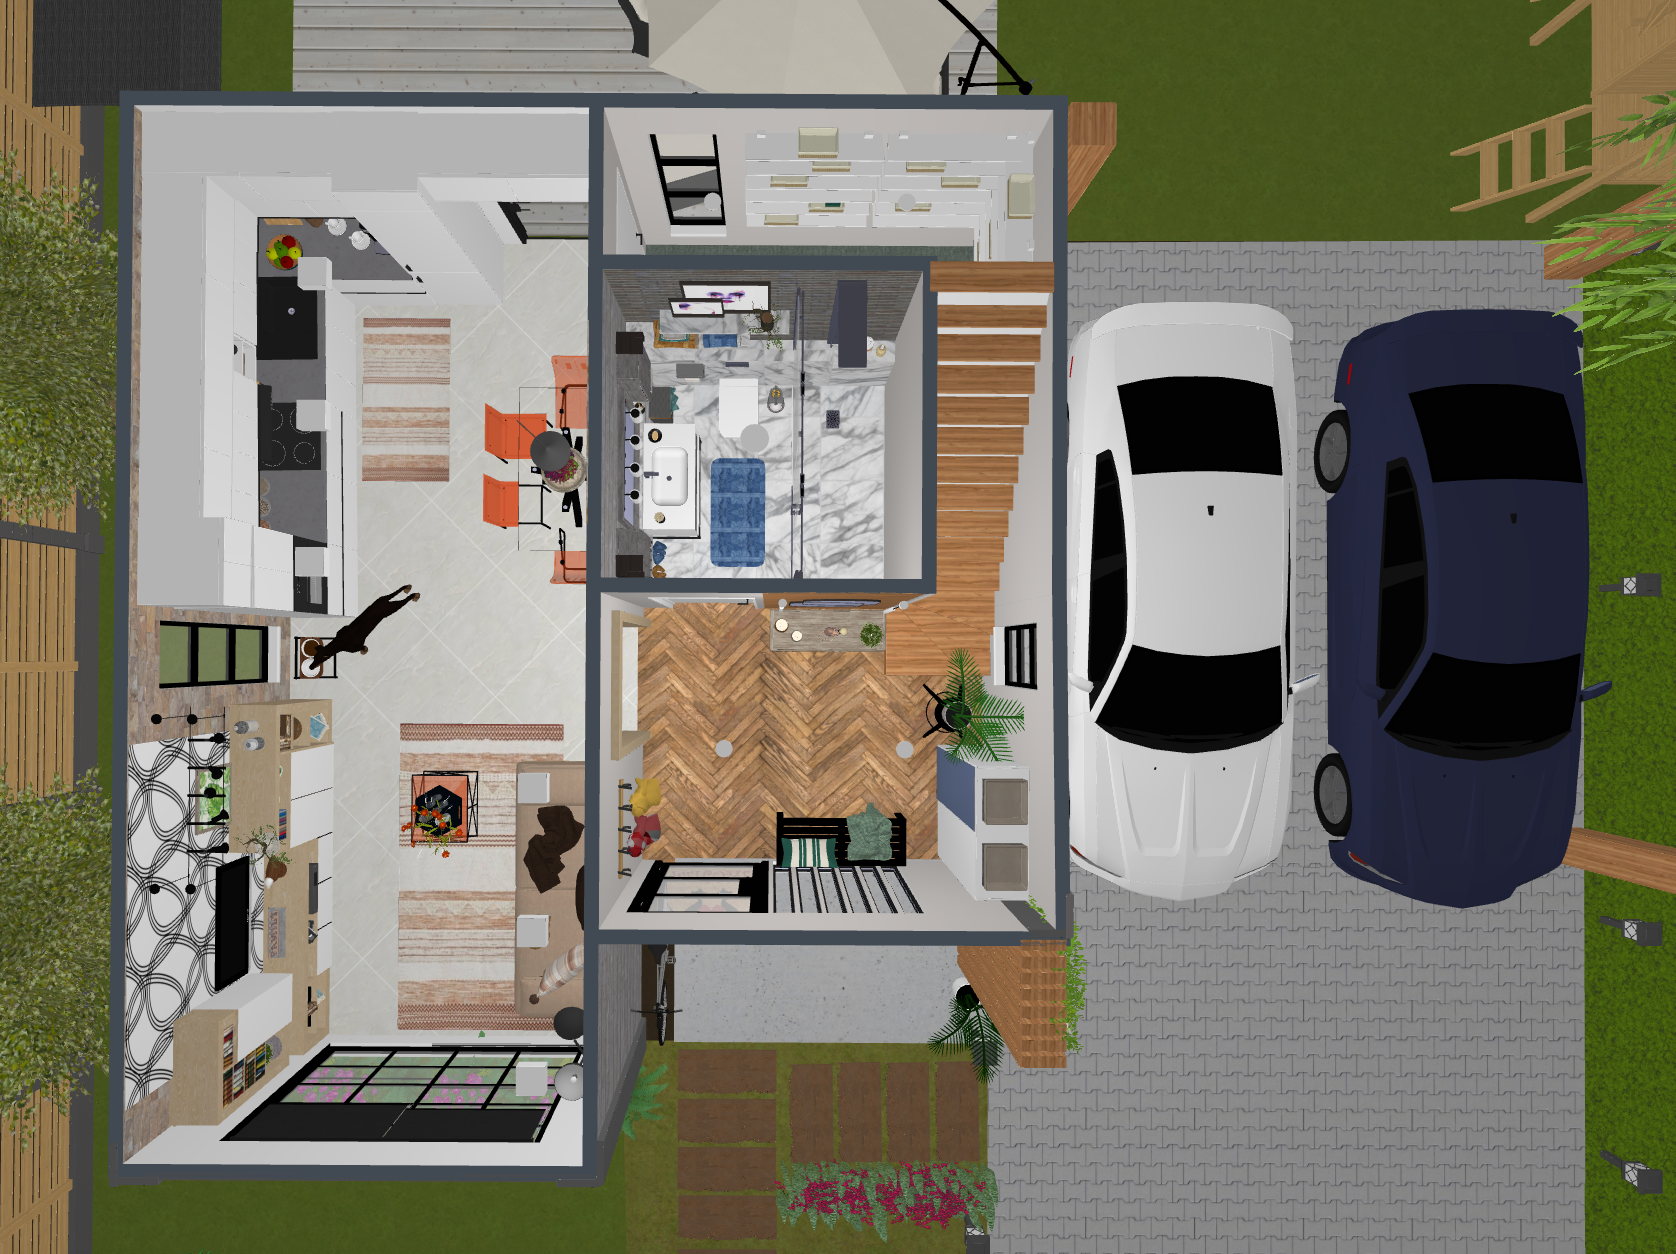 Planos de casas pequeñas de dos pisos: modernas y otros